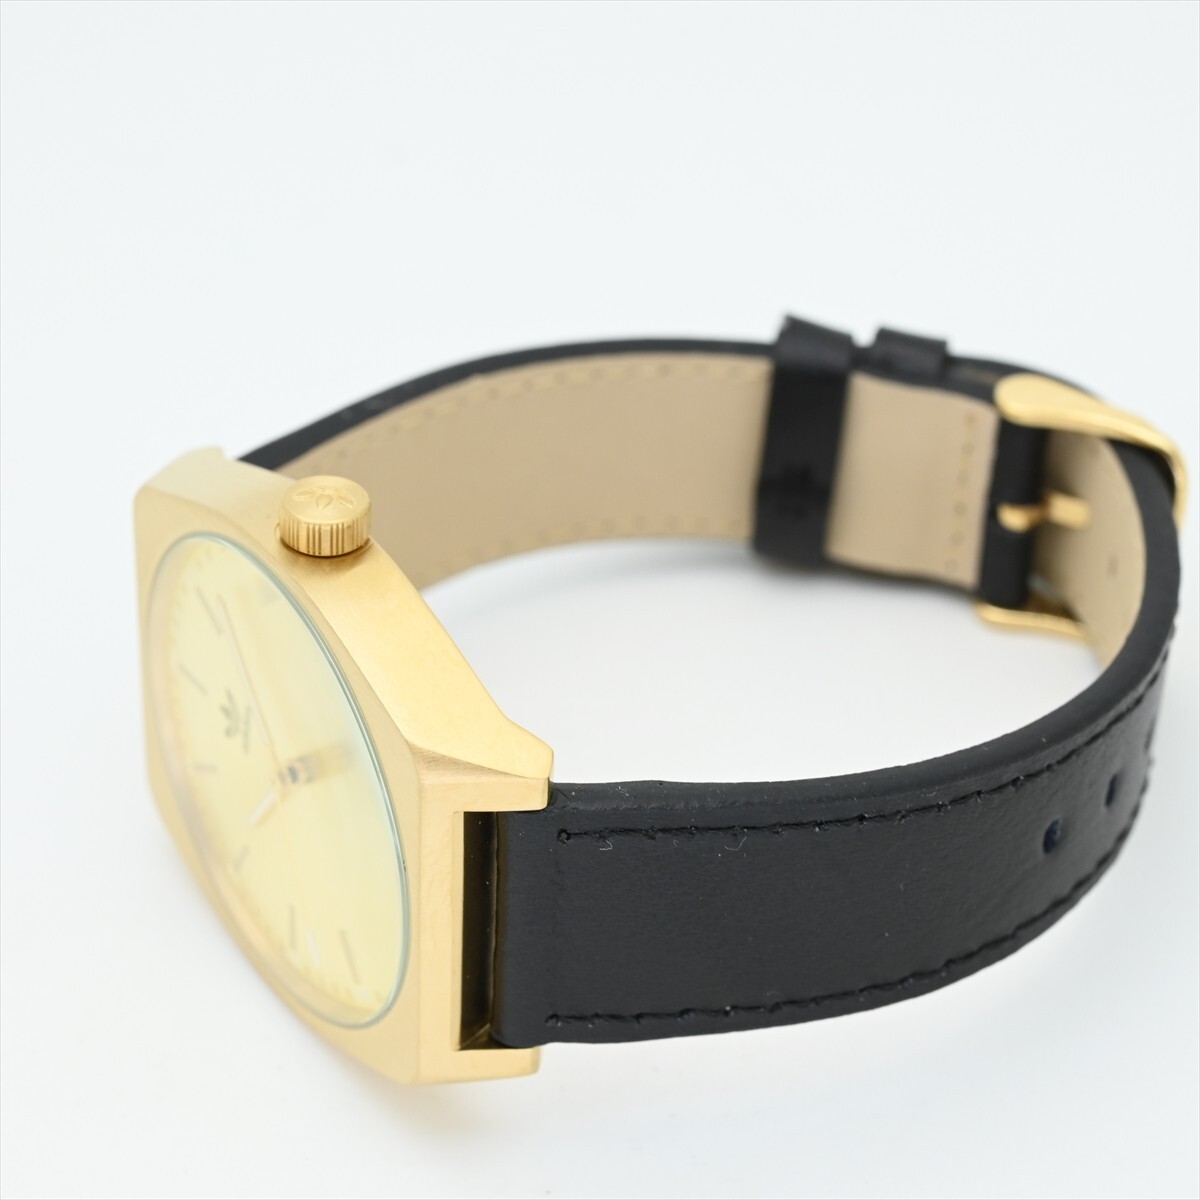  не использовался прекрасный товар Adidas /ADIDAS* кварц 100m водонепроницаемый батарейка заменен мужские наручные часы оригинальный натуральная кожа ремень Gold золотой цвет чёрный черный 